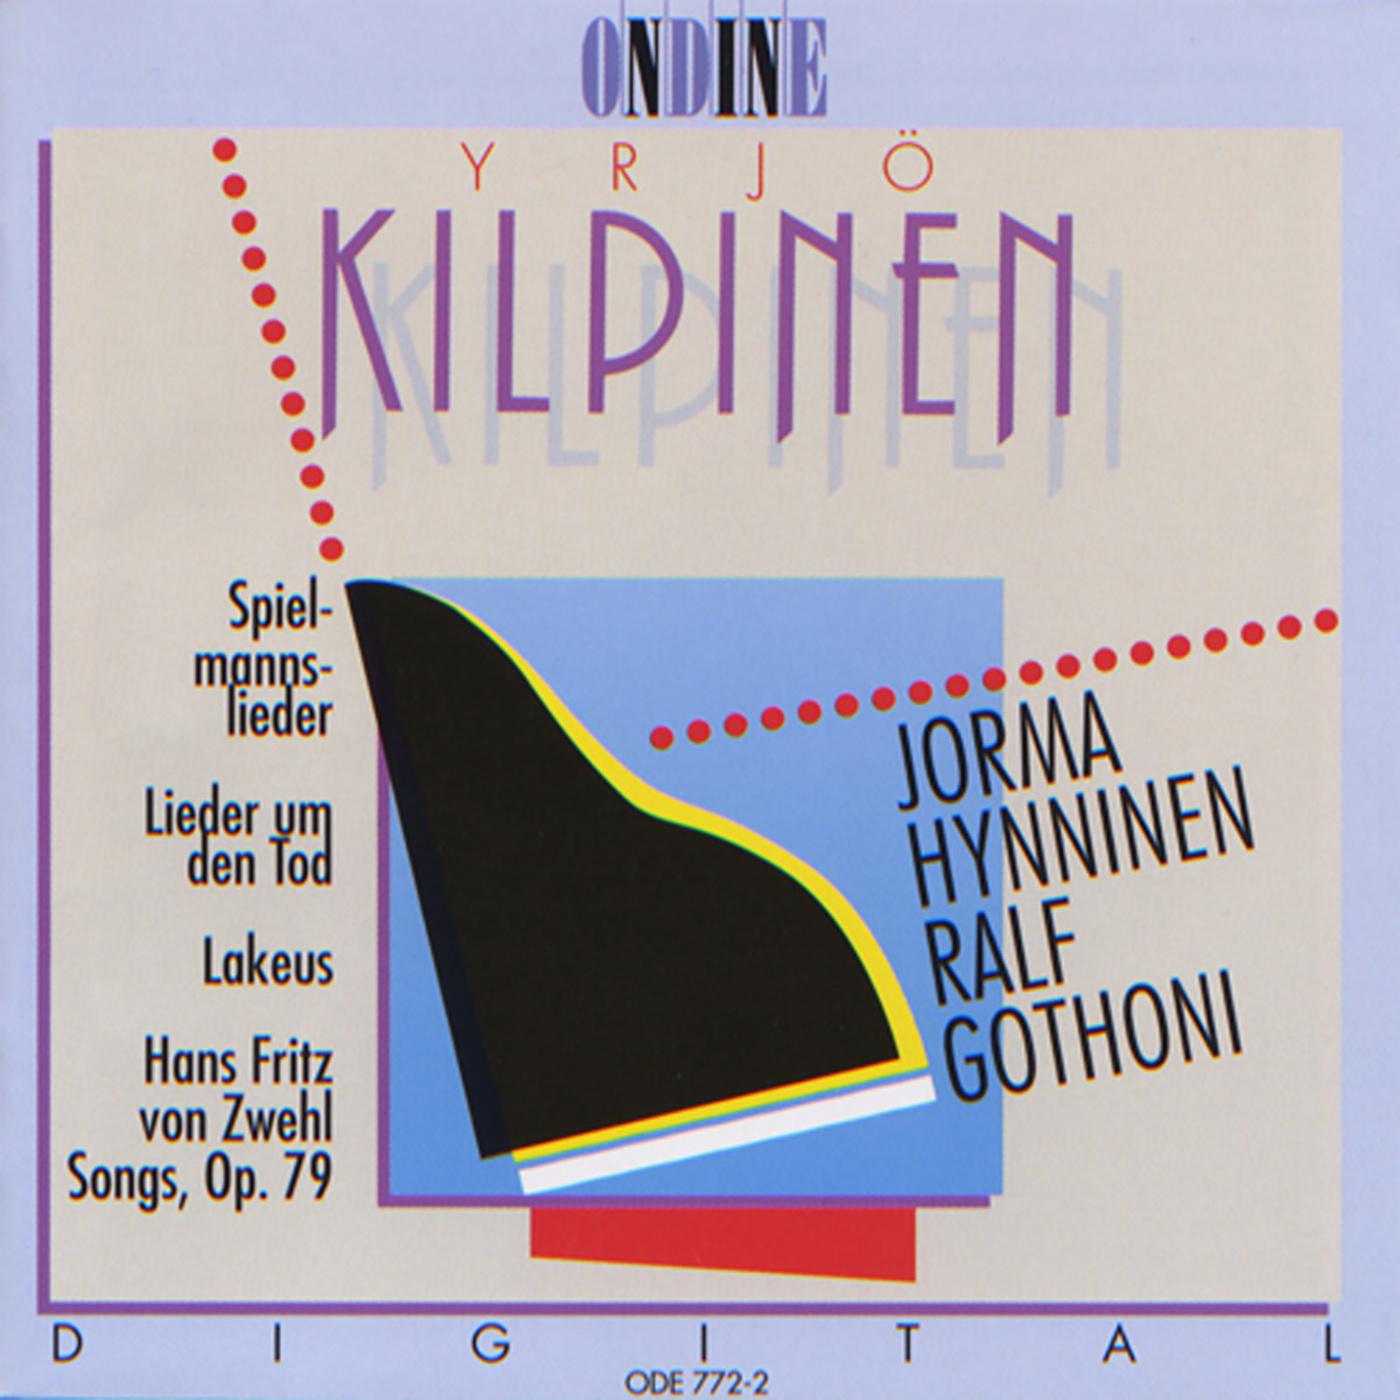 Jorma Hynninen - 7 Lieder, Op. 79:No. 7. Marienkirche zu Danzig im Gerust